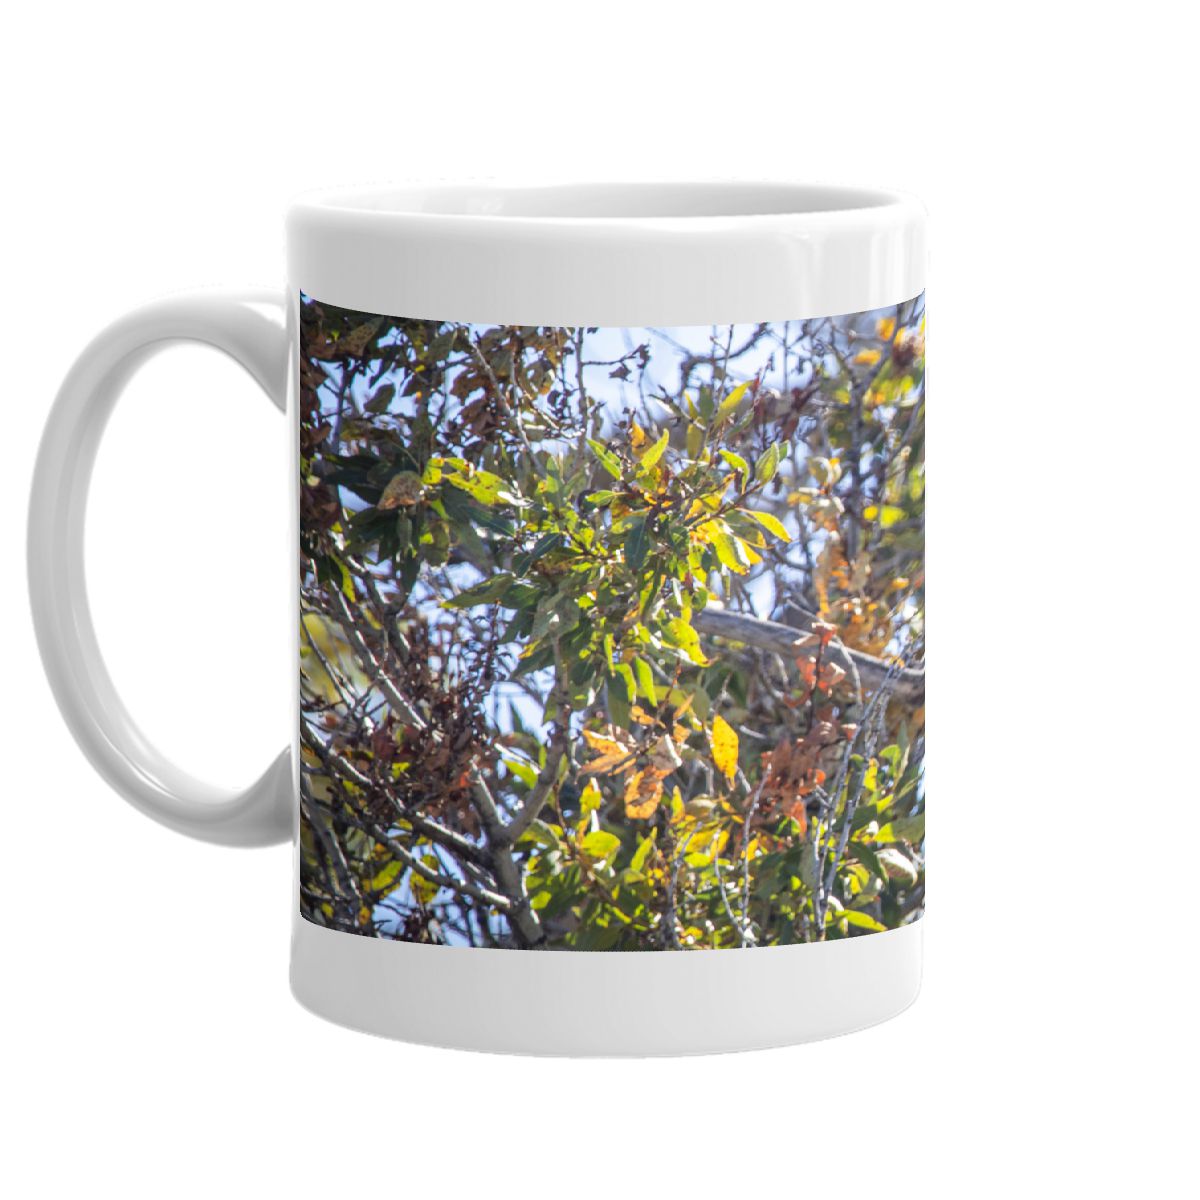 Osprey 11oz coffee mug